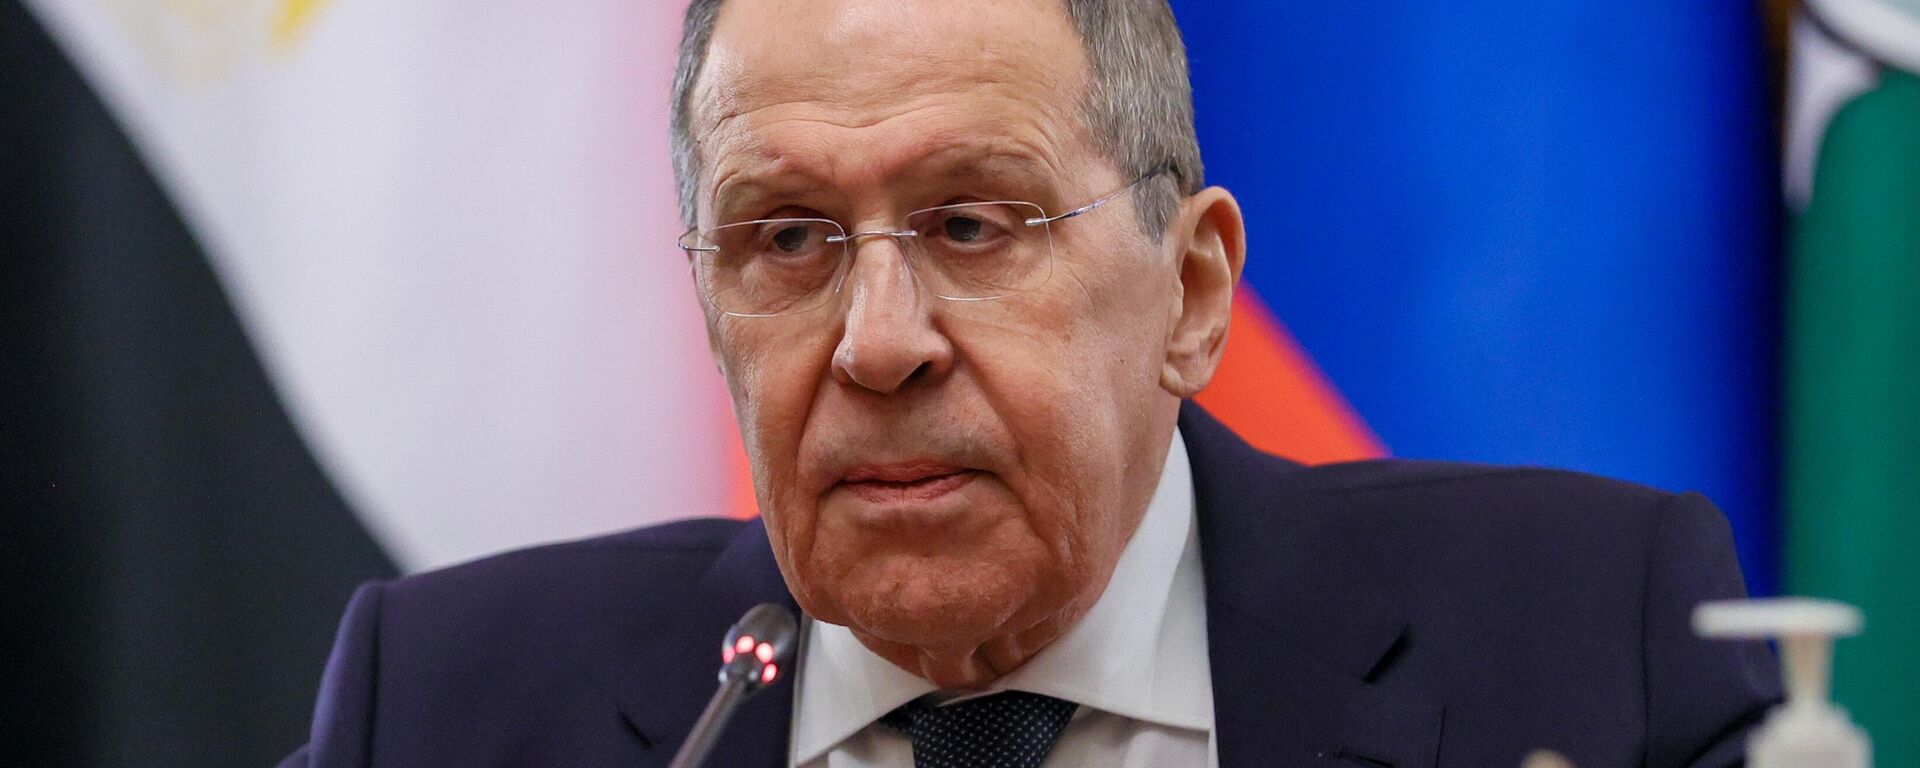 Sergei Lavrov, ministro das Relações Exteriores russo, participa de reunião diplomática em Moscou, na Rússia, em 4 de abril de 2022 - Sputnik Brasil, 1920, 07.04.2022